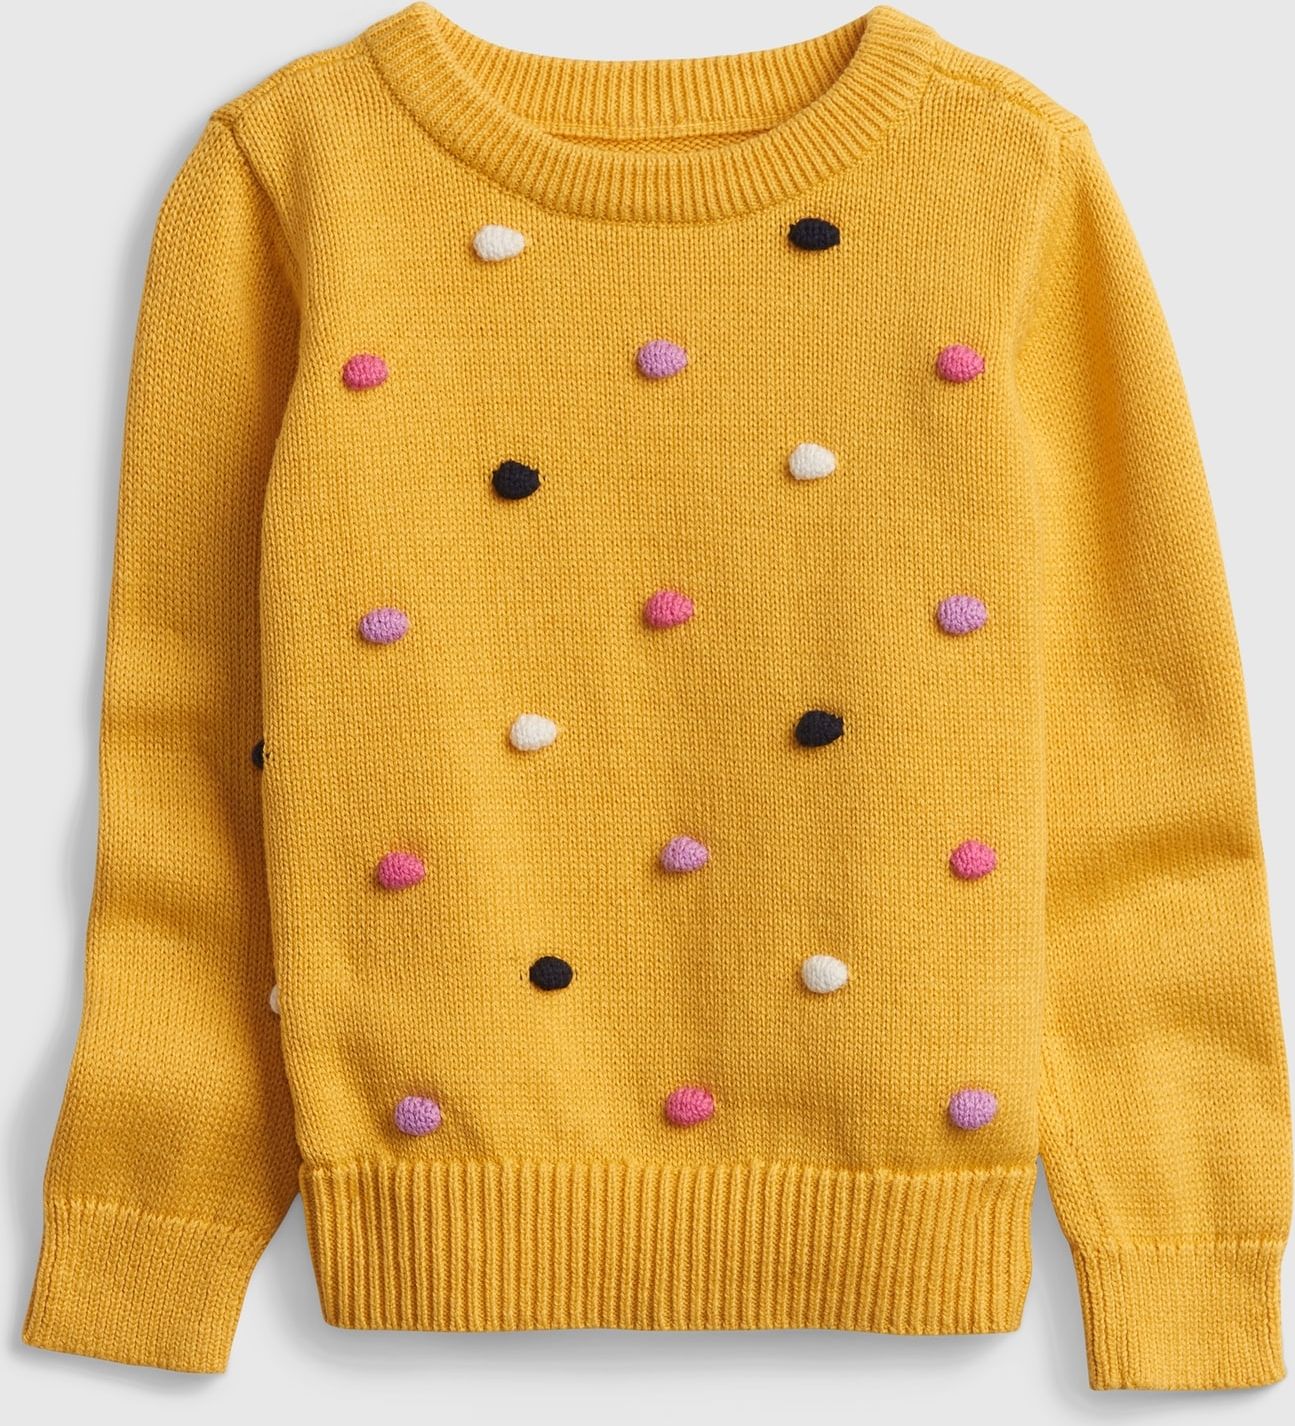 Dívky - Dětský svetr s puntíky Žlutá - 80-86 - obrázek 1